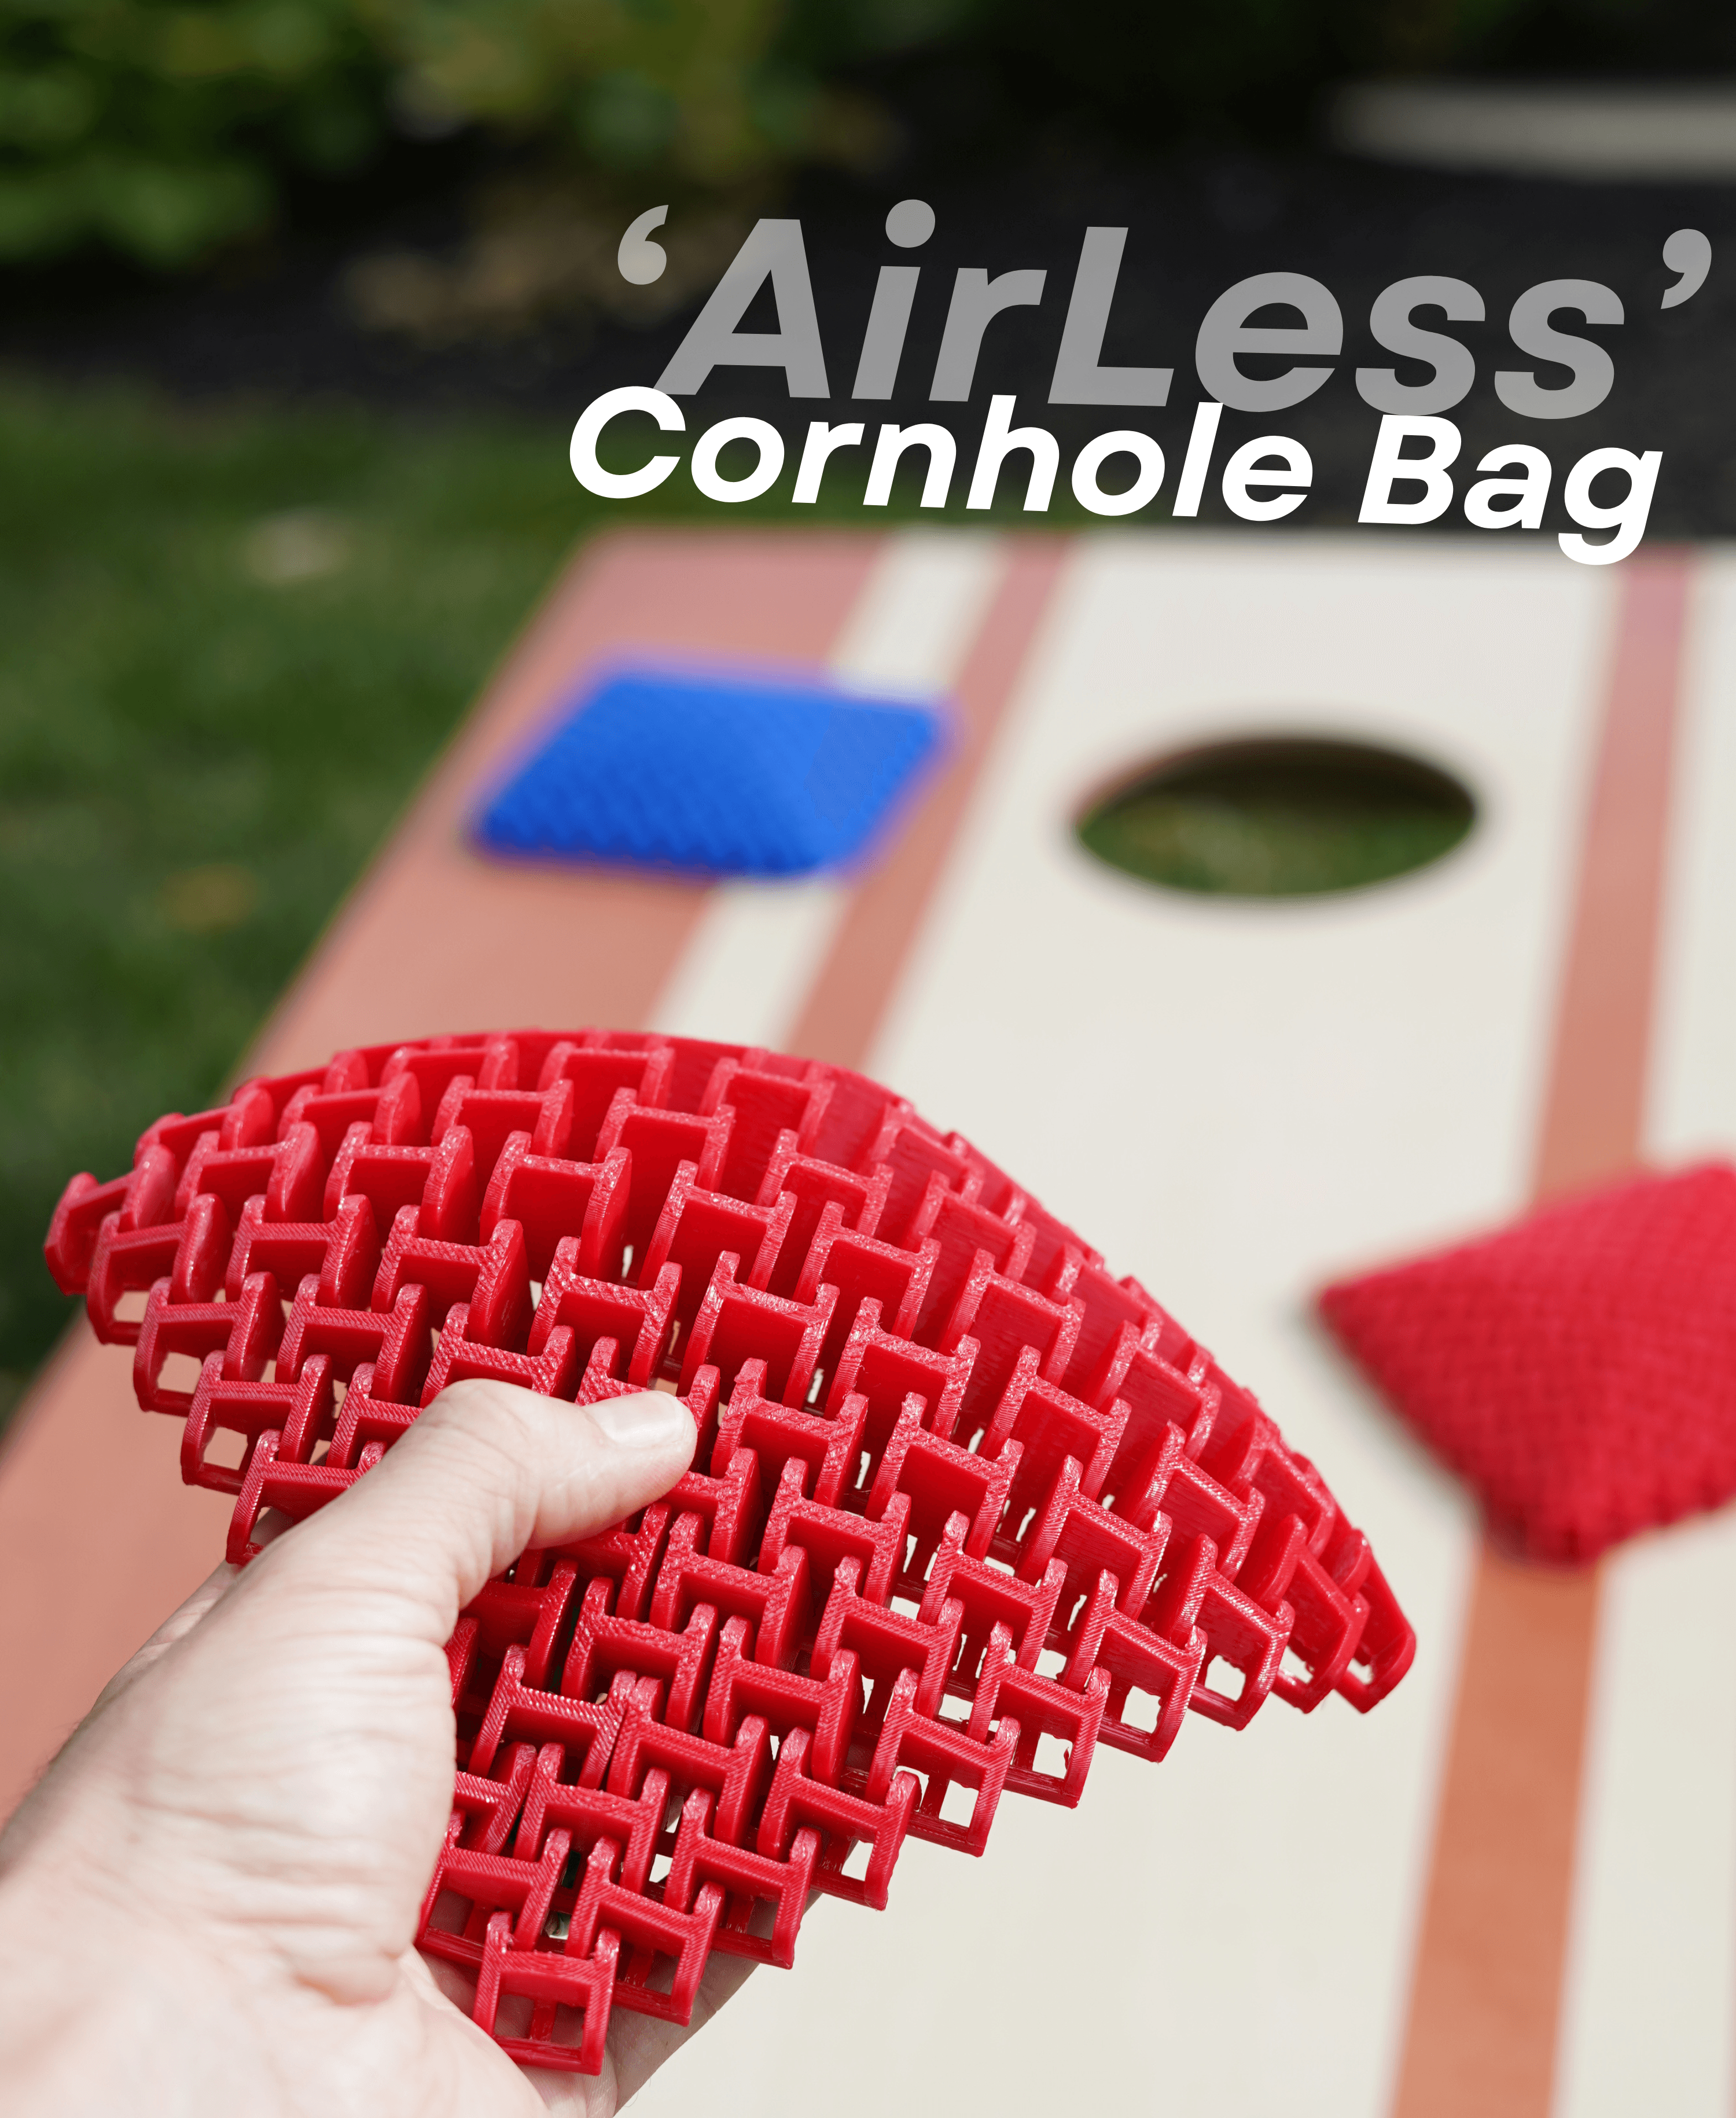 Airless Cornhole Bag - The original 'Full Size' beanless beanbag 3d model